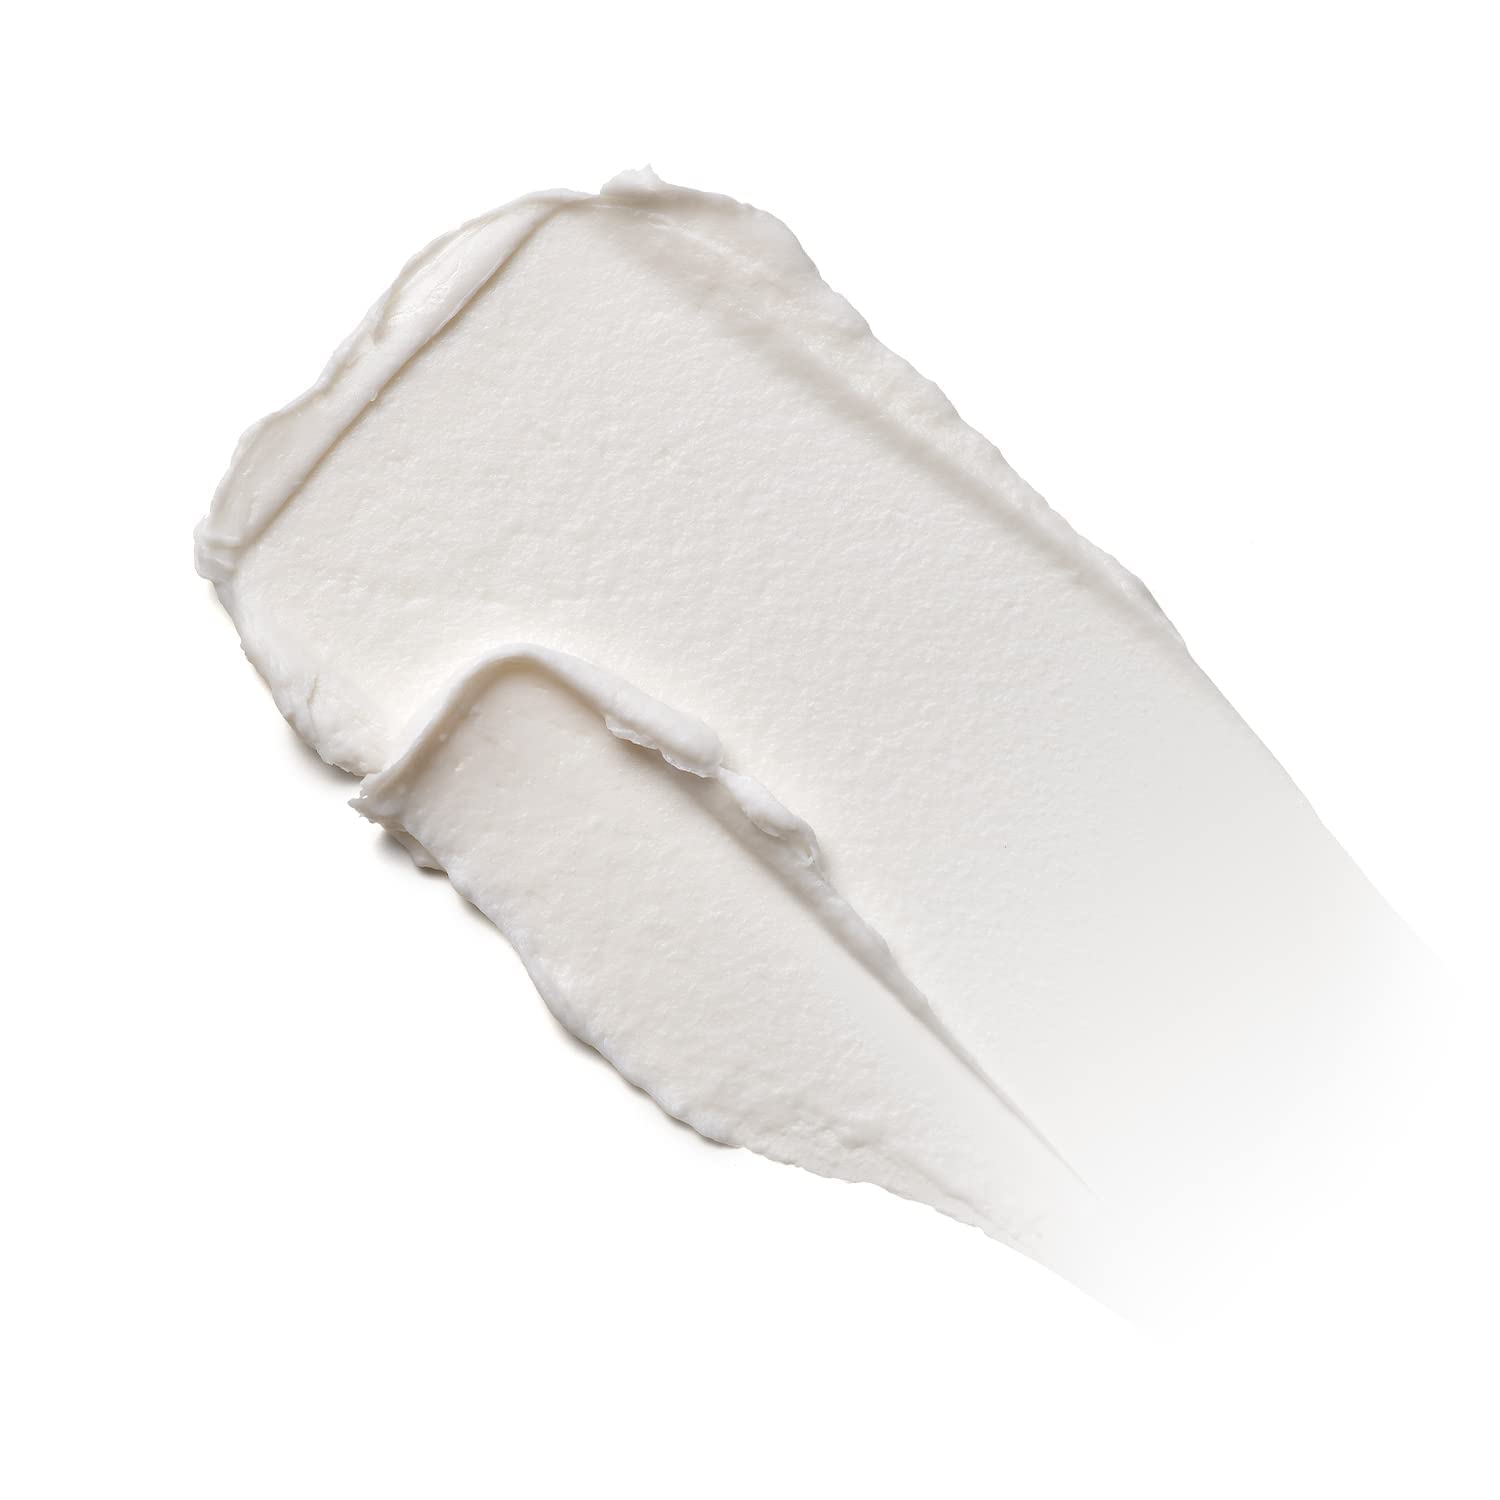 Moroccanoil Molding Cream, 3.4 Fl. Oz